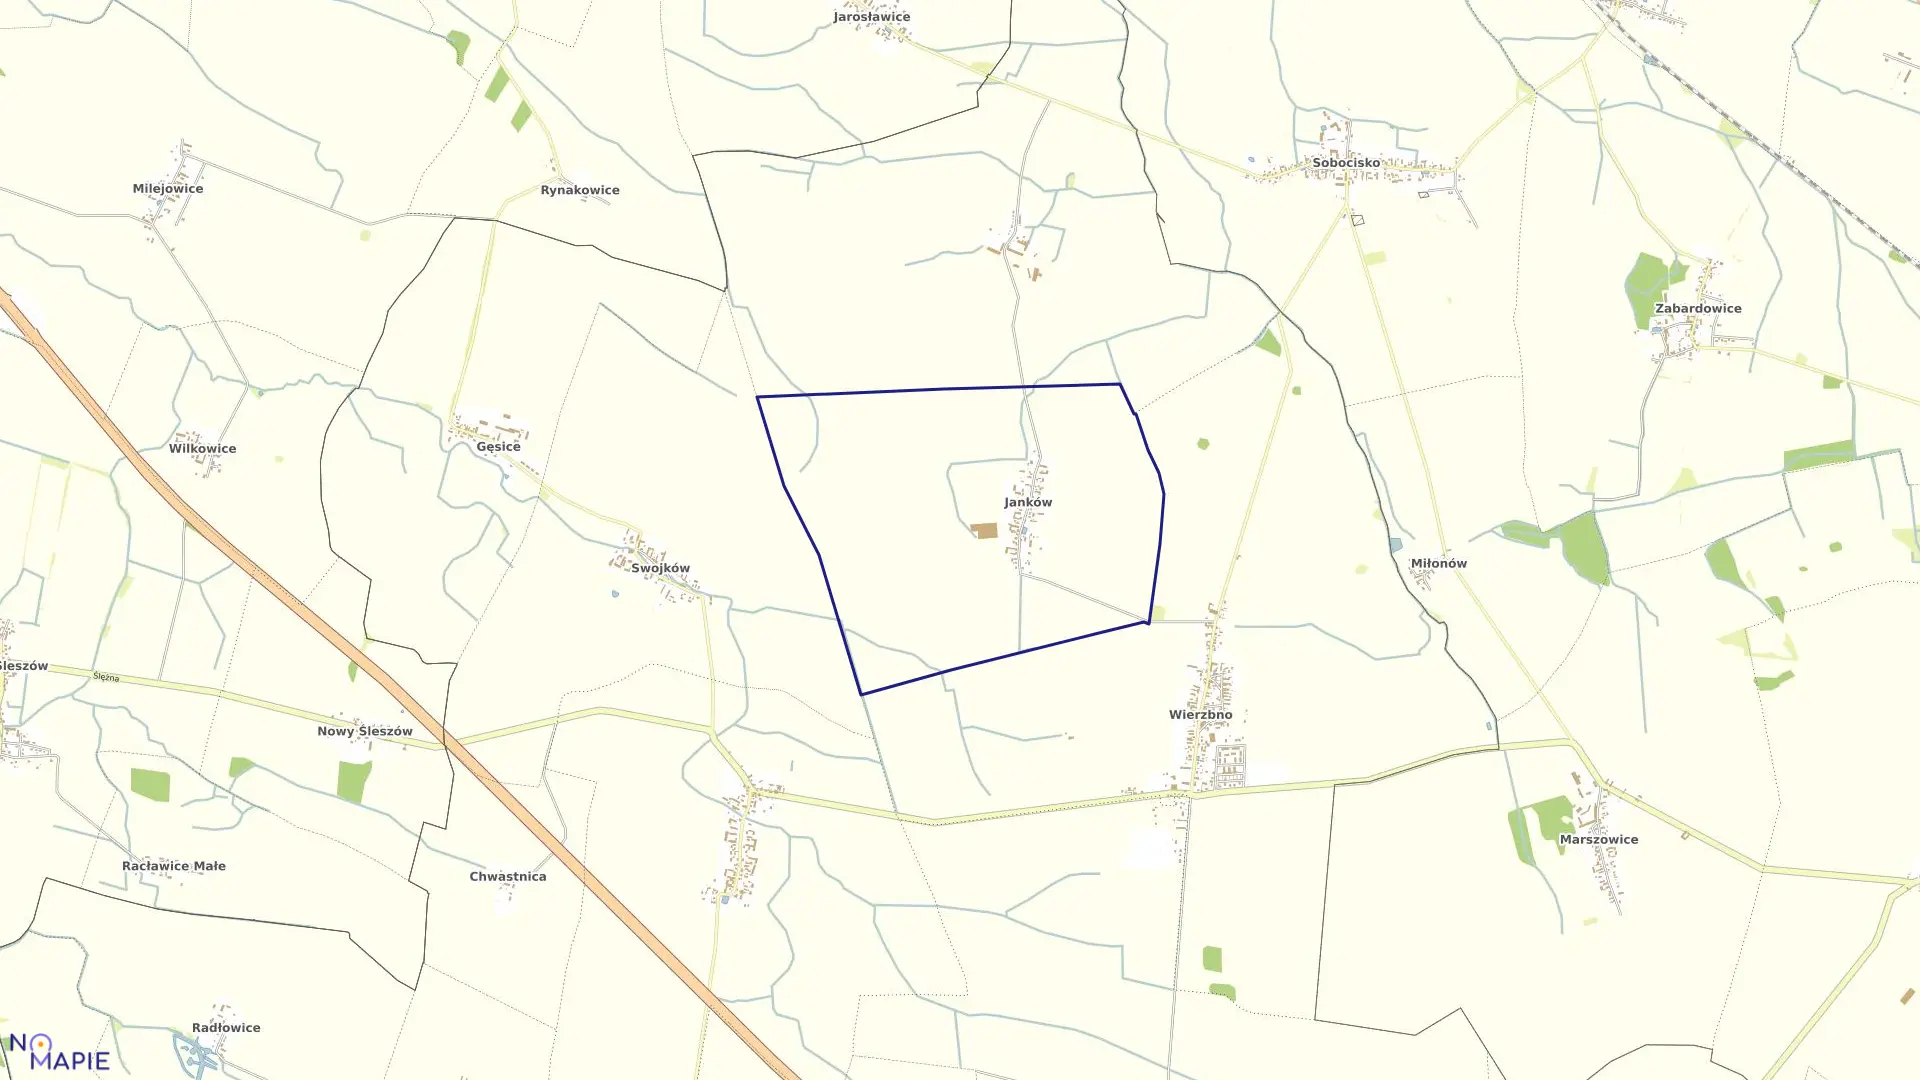 Mapa obrębu JANKÓW w gminie Domaniów